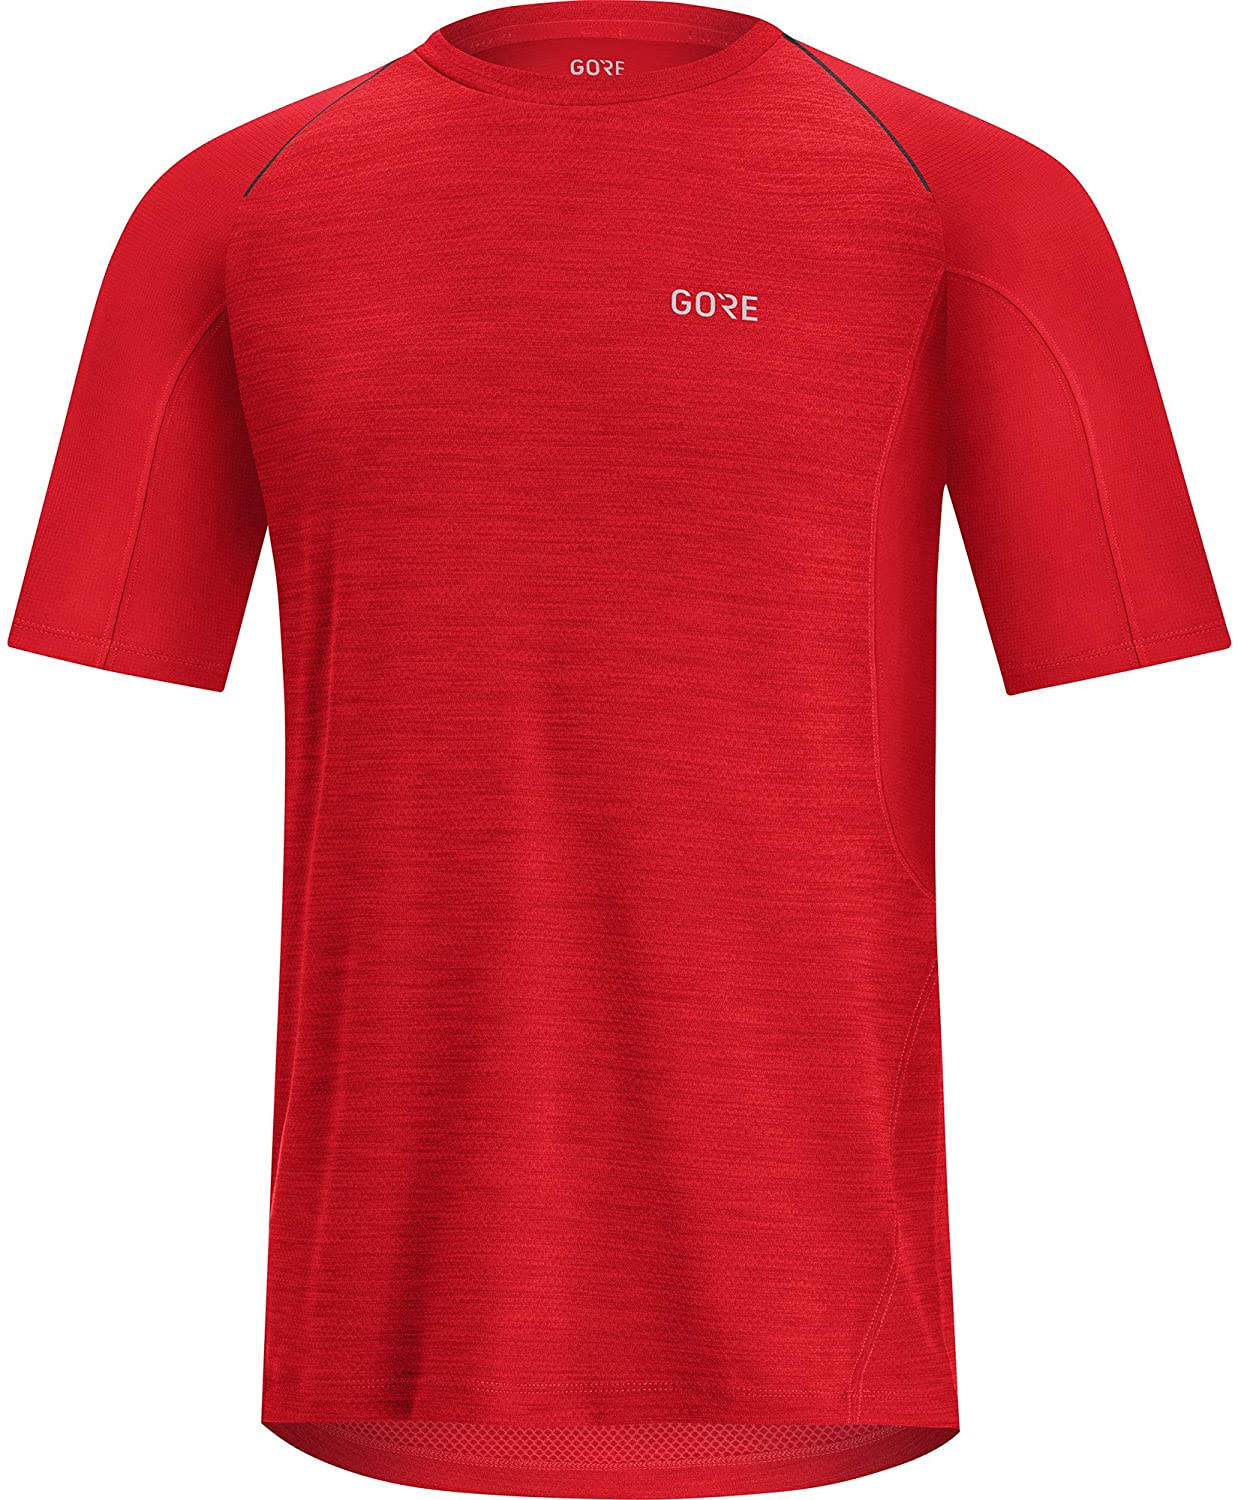 Gore Wear R5 Shirt - T-shirt - Hombre